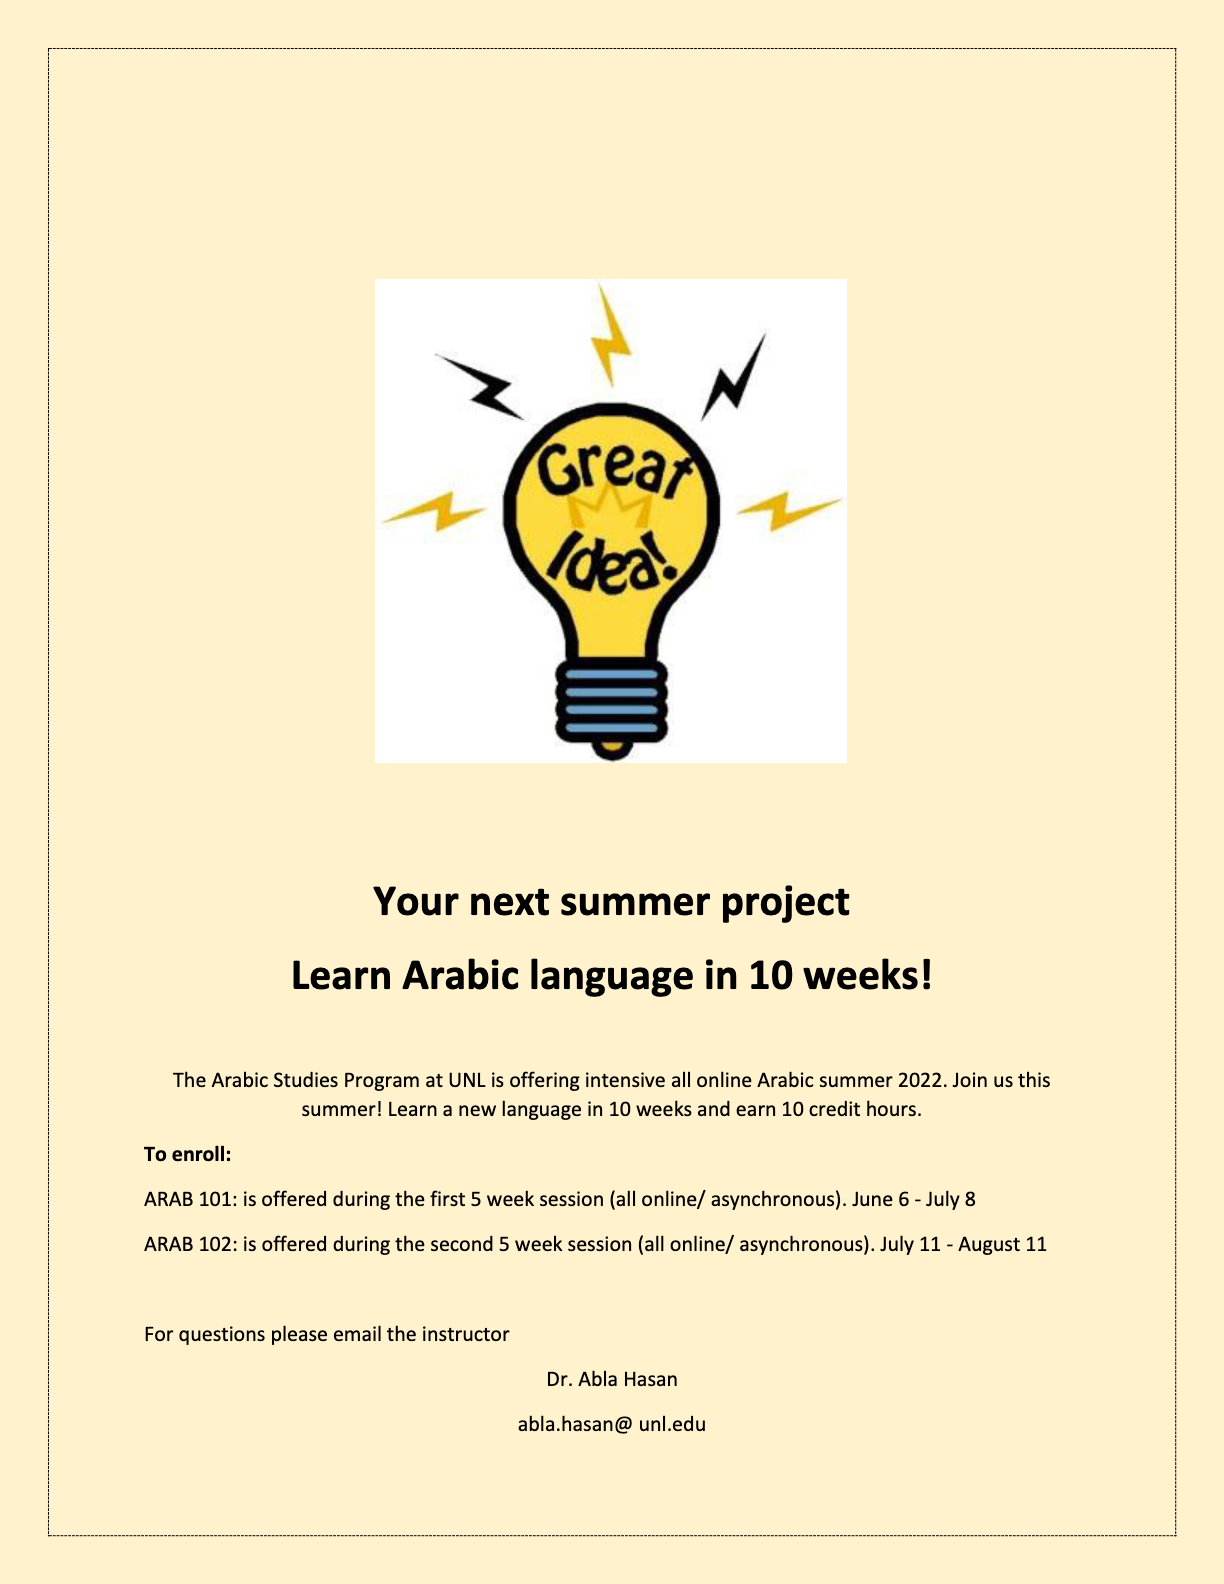 Learn Arabic this Summer!